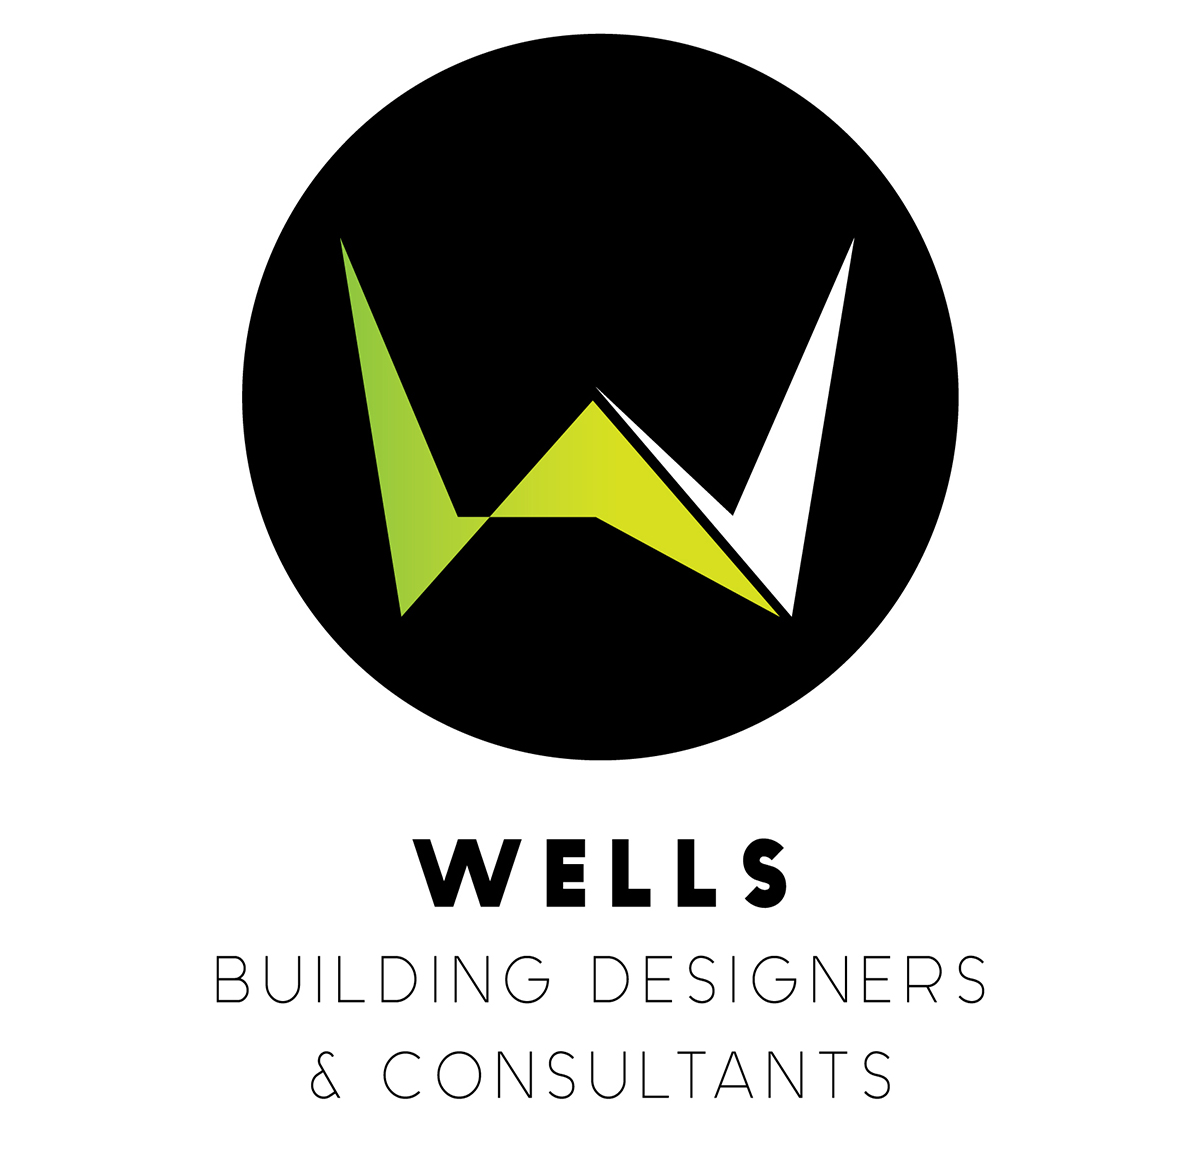 Wells Building Designers